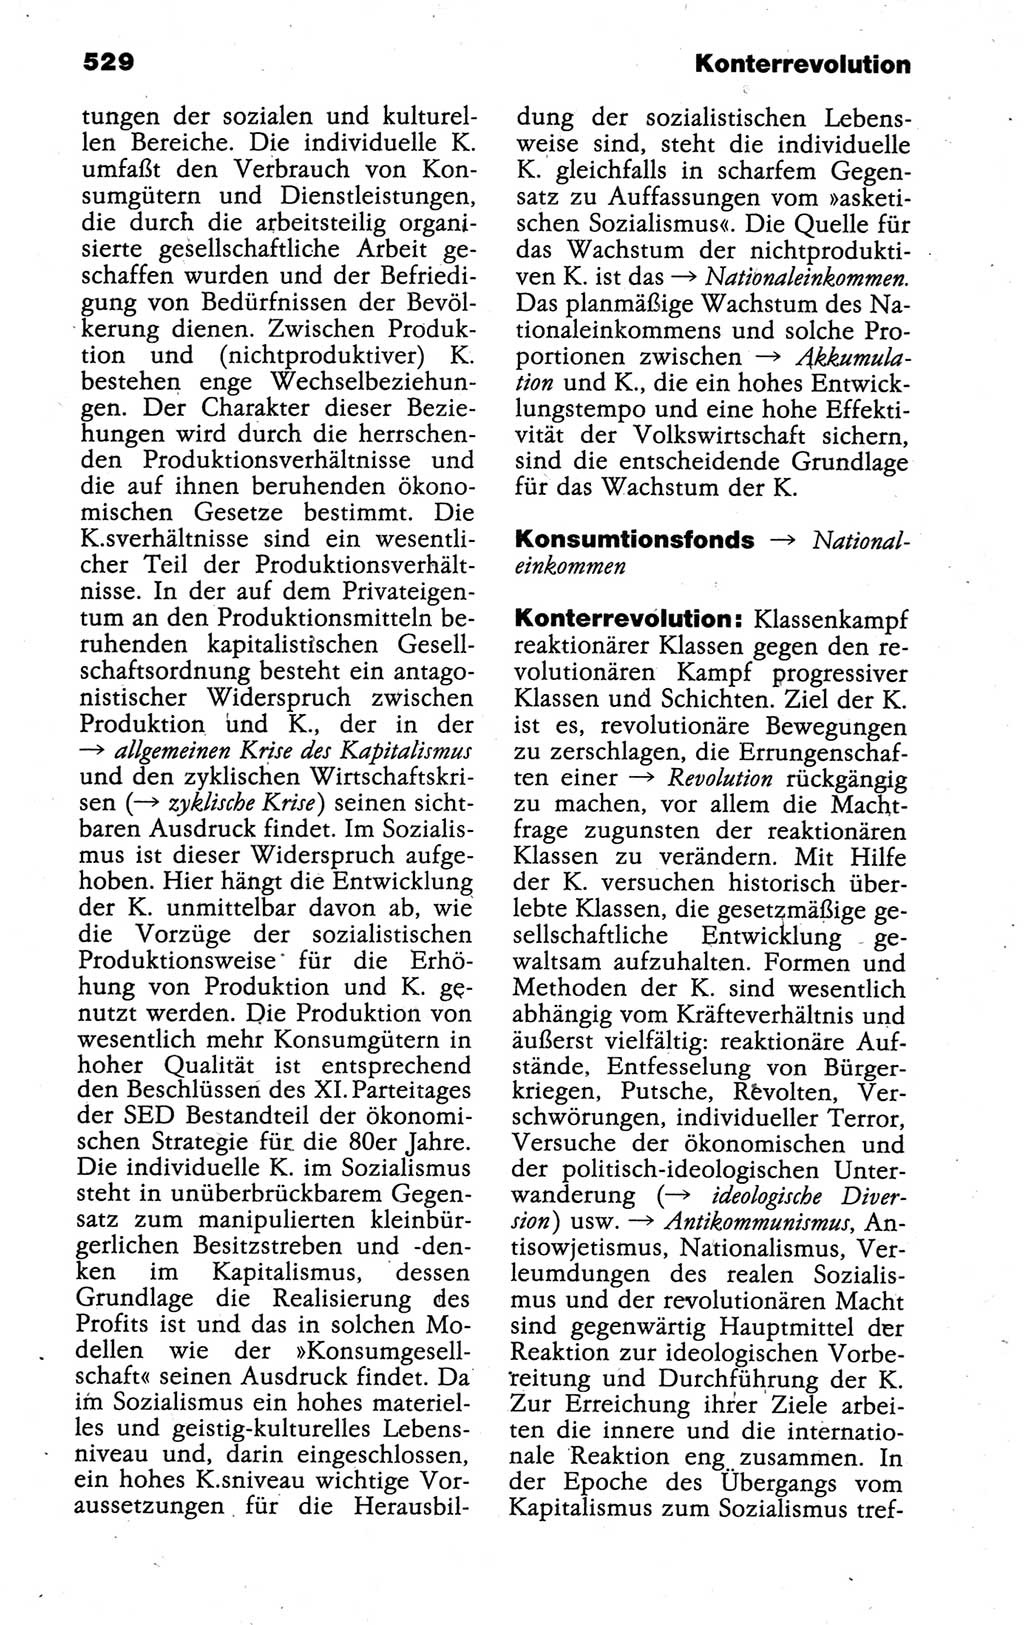 Kleines politisches Wörterbuch [Deutsche Demokratische Republik (DDR)] 1988, Seite 529 (Kl. pol. Wb. DDR 1988, S. 529)